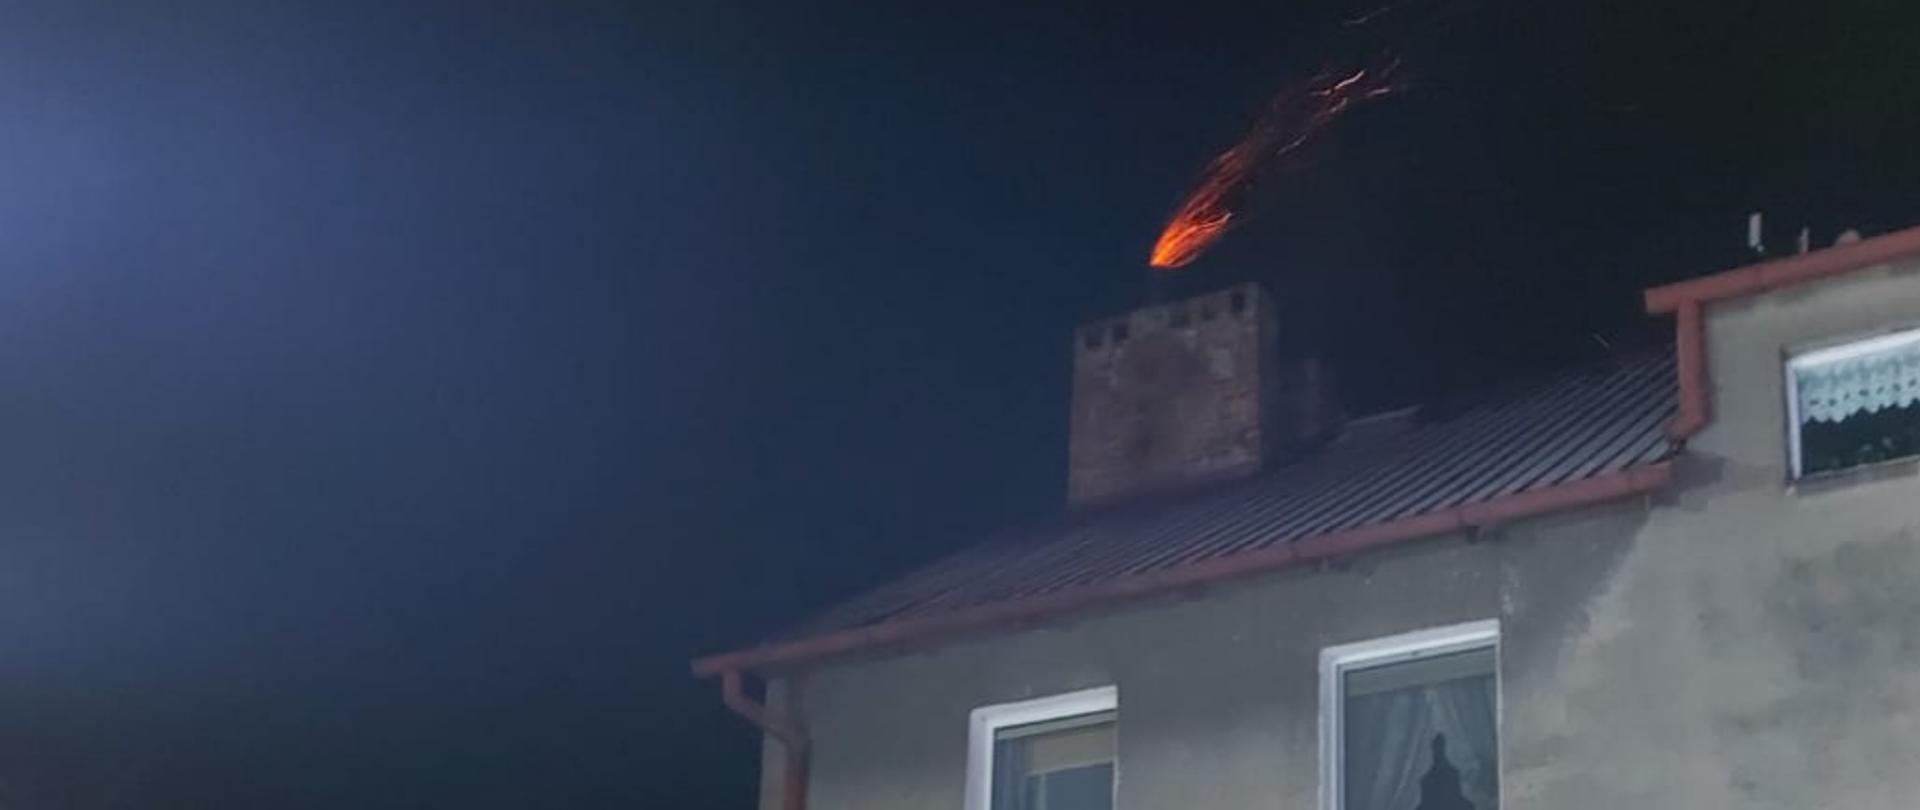 Na zdjęciu widać pożar sadzy w kominie w budynku. Z komina wydobywa się widoczny płomień w postaci czerwonej wstęgi. 